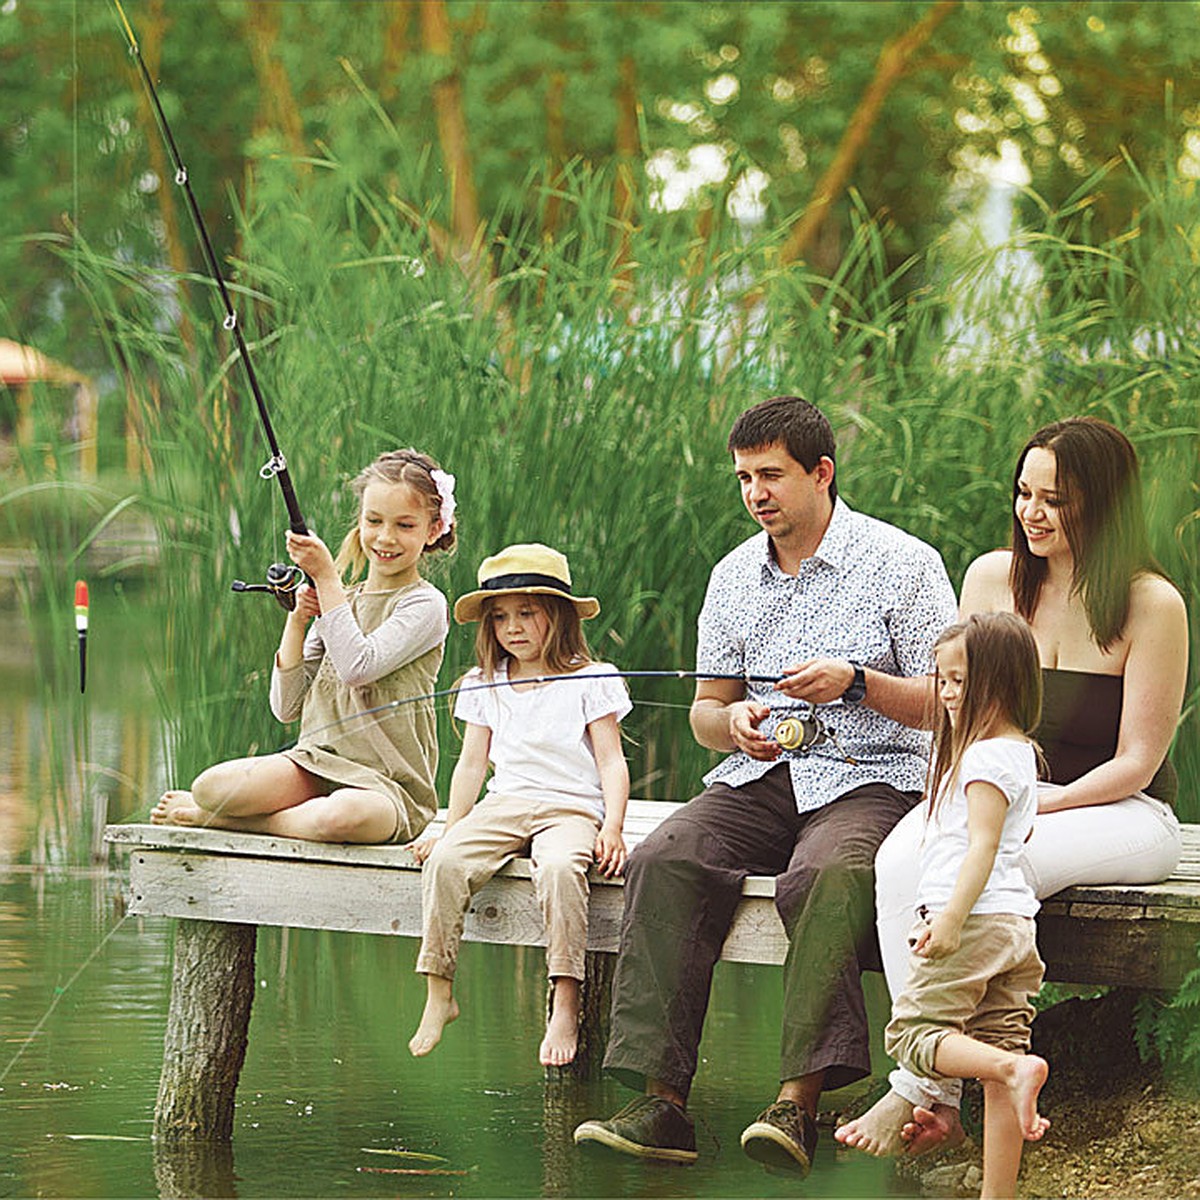 Чем увлекается семья. Семья на рыбалке. Семейные увлечения. Дети на рыбалке. Семья у реки.